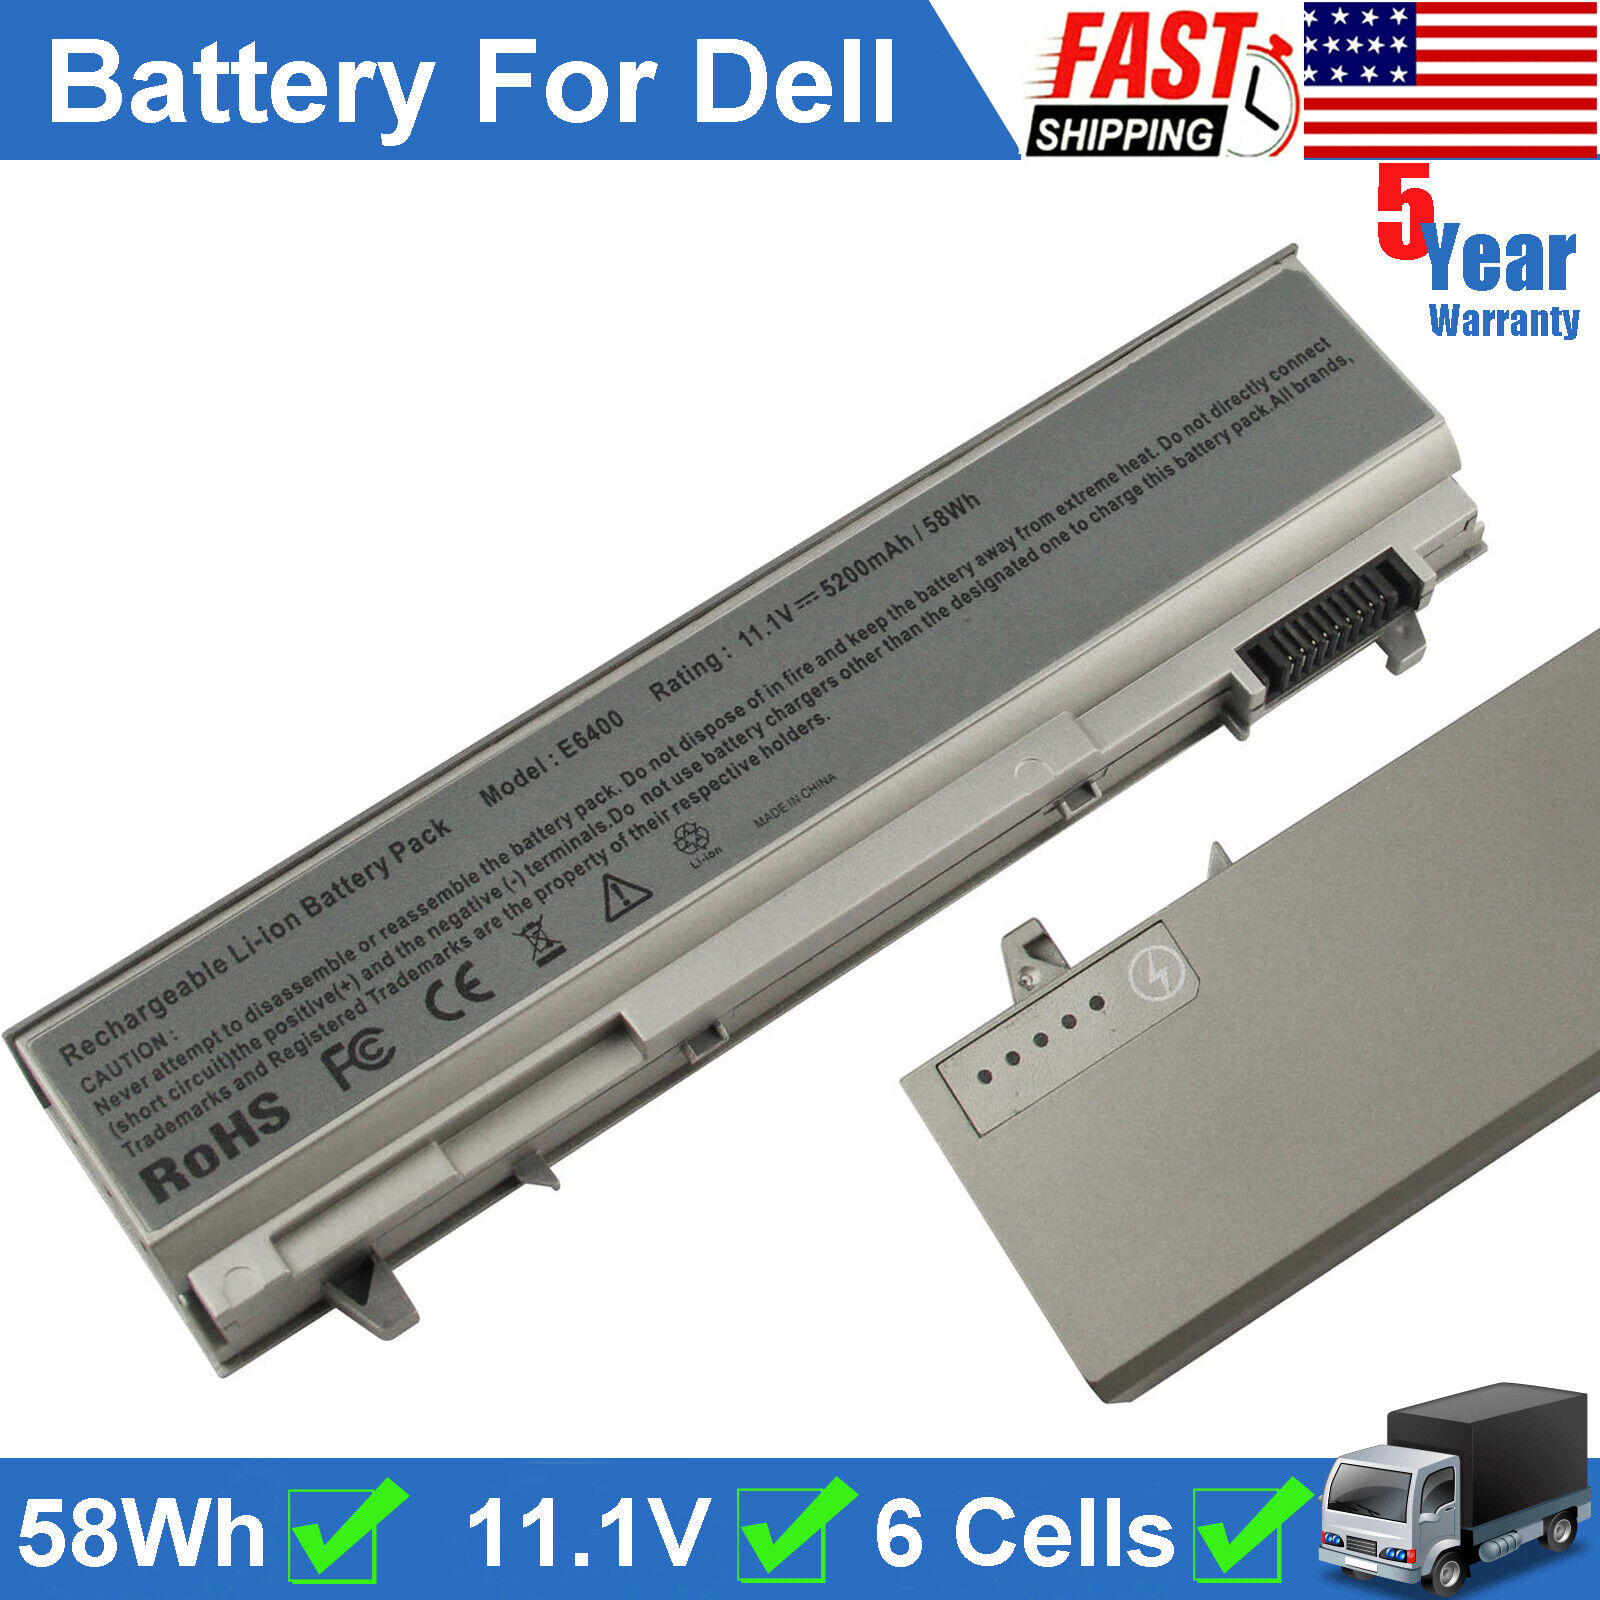 6 Cells Battery For Dell Latitude E6400 E6410 E6500 E6510 Precision M2400 M4400